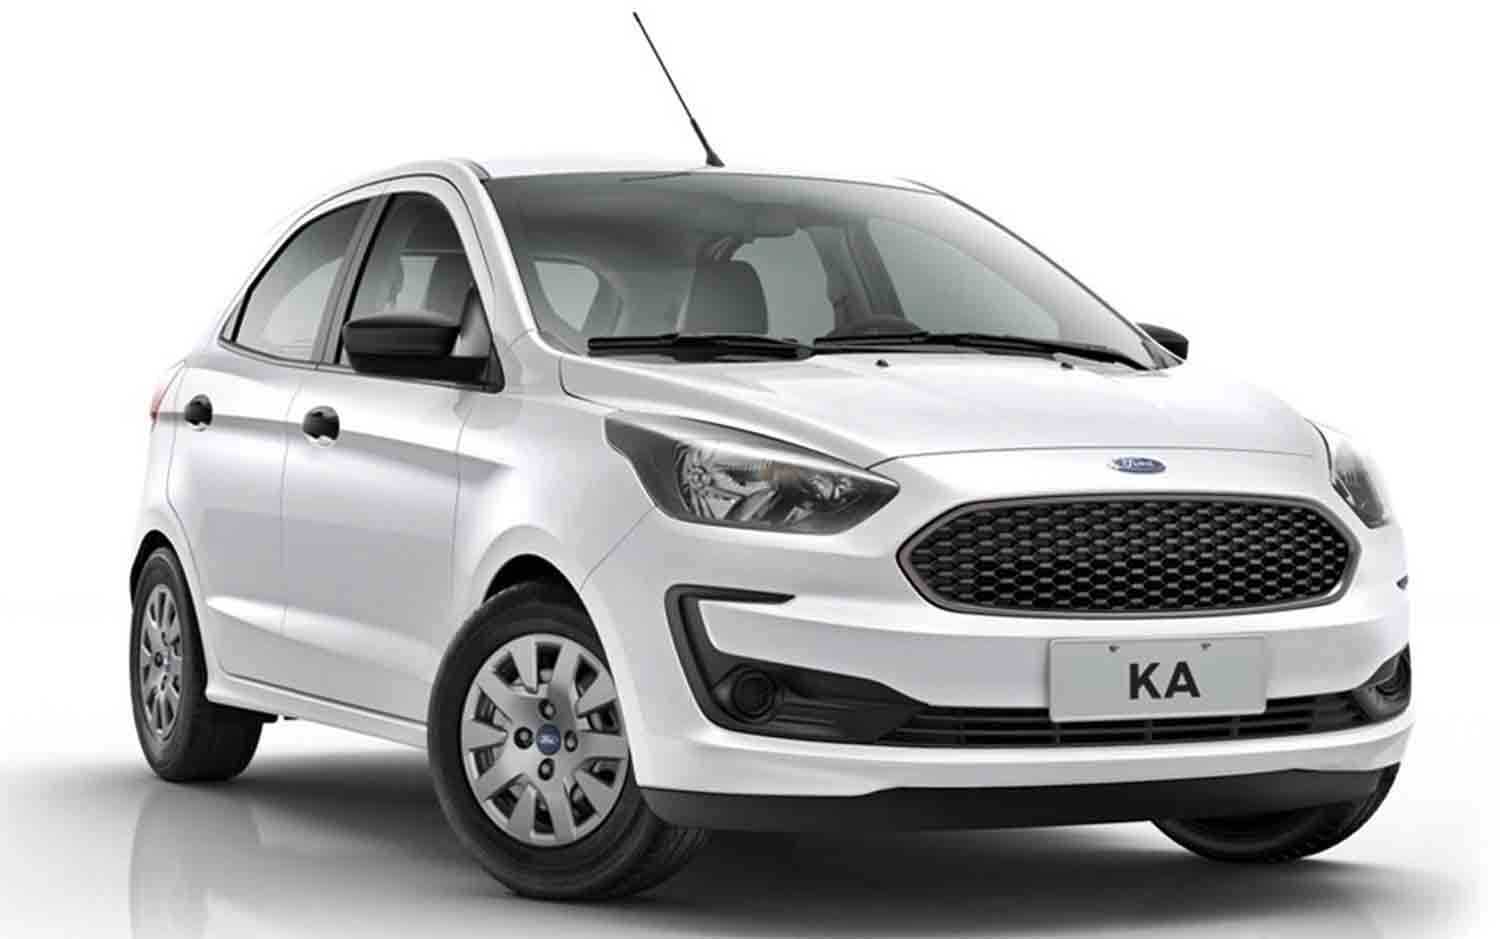 Black Friday Ford: Ka Hatch 1.0 S pode ser adquirido com entrada de R$9.900 e 60 parcelas de R$915. Foto: Divulgação